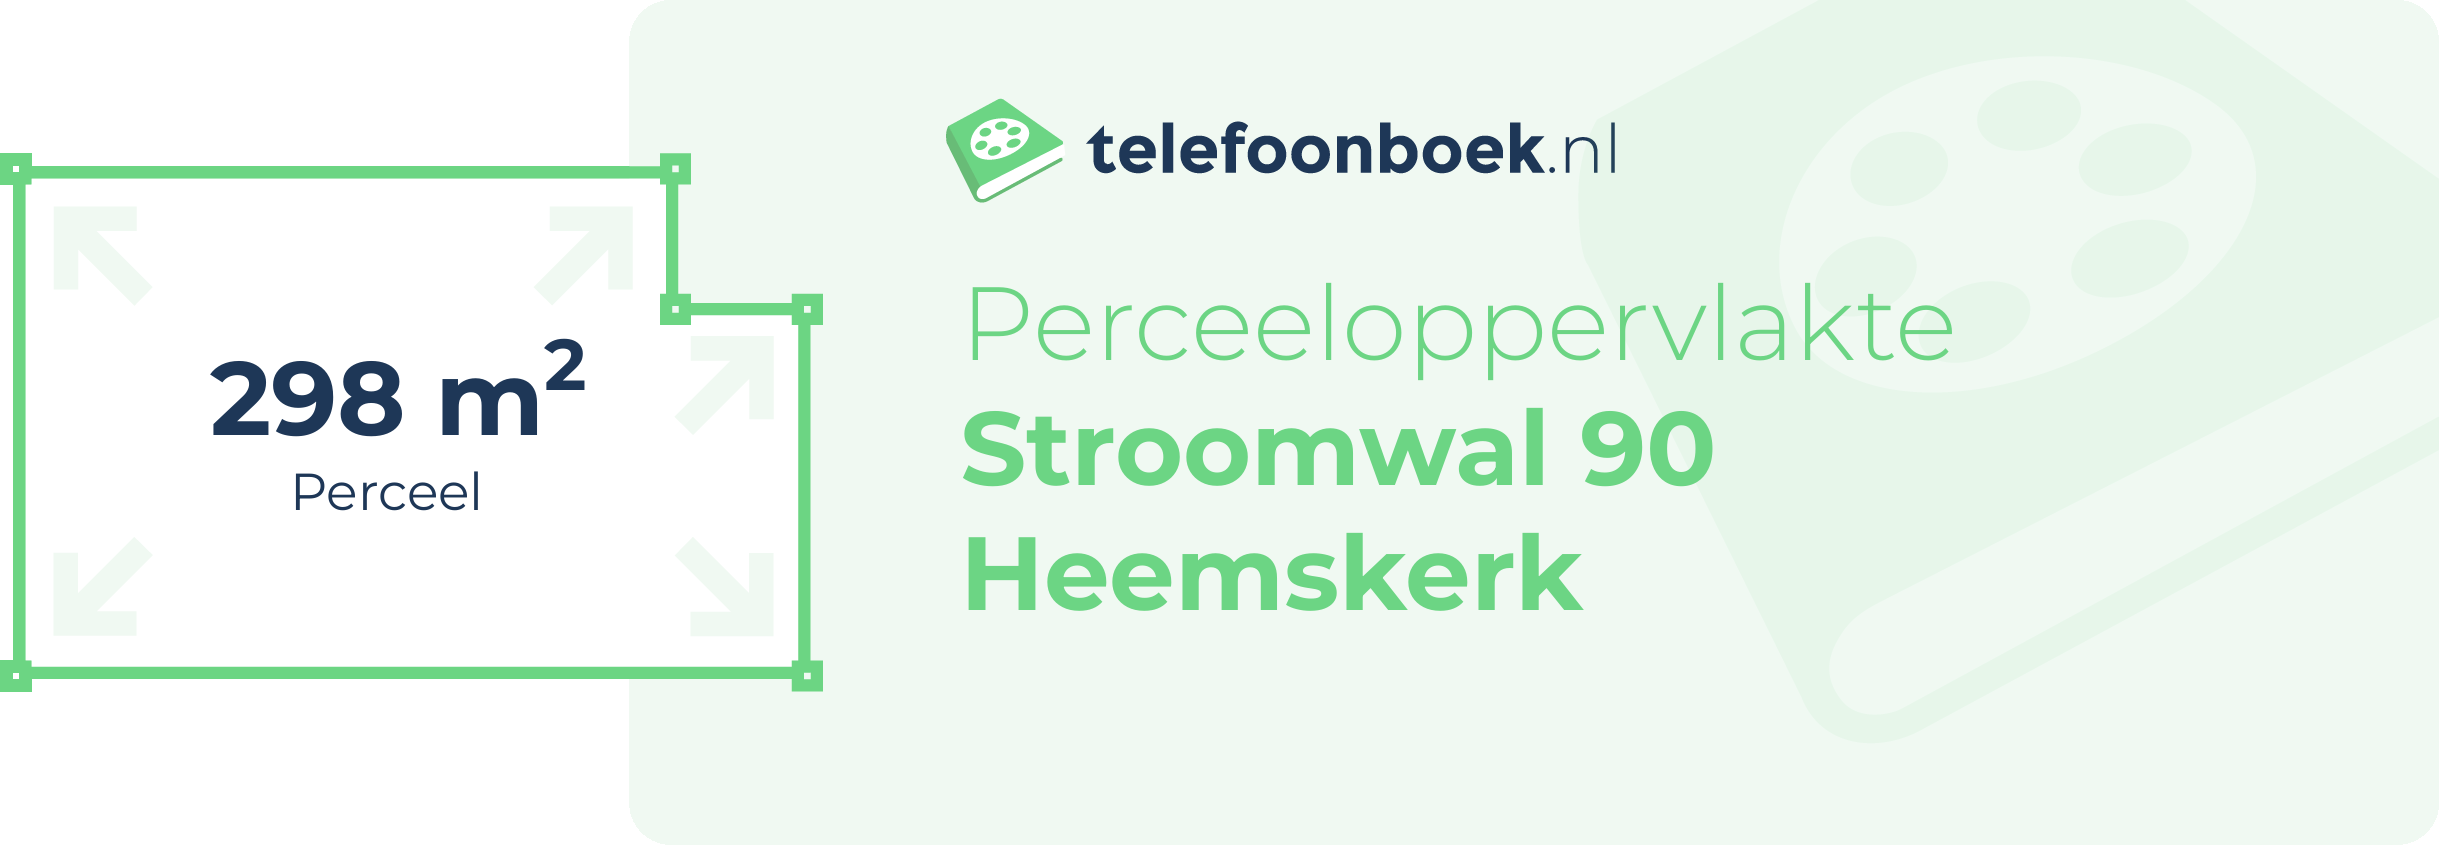 Perceeloppervlakte Stroomwal 90 Heemskerk